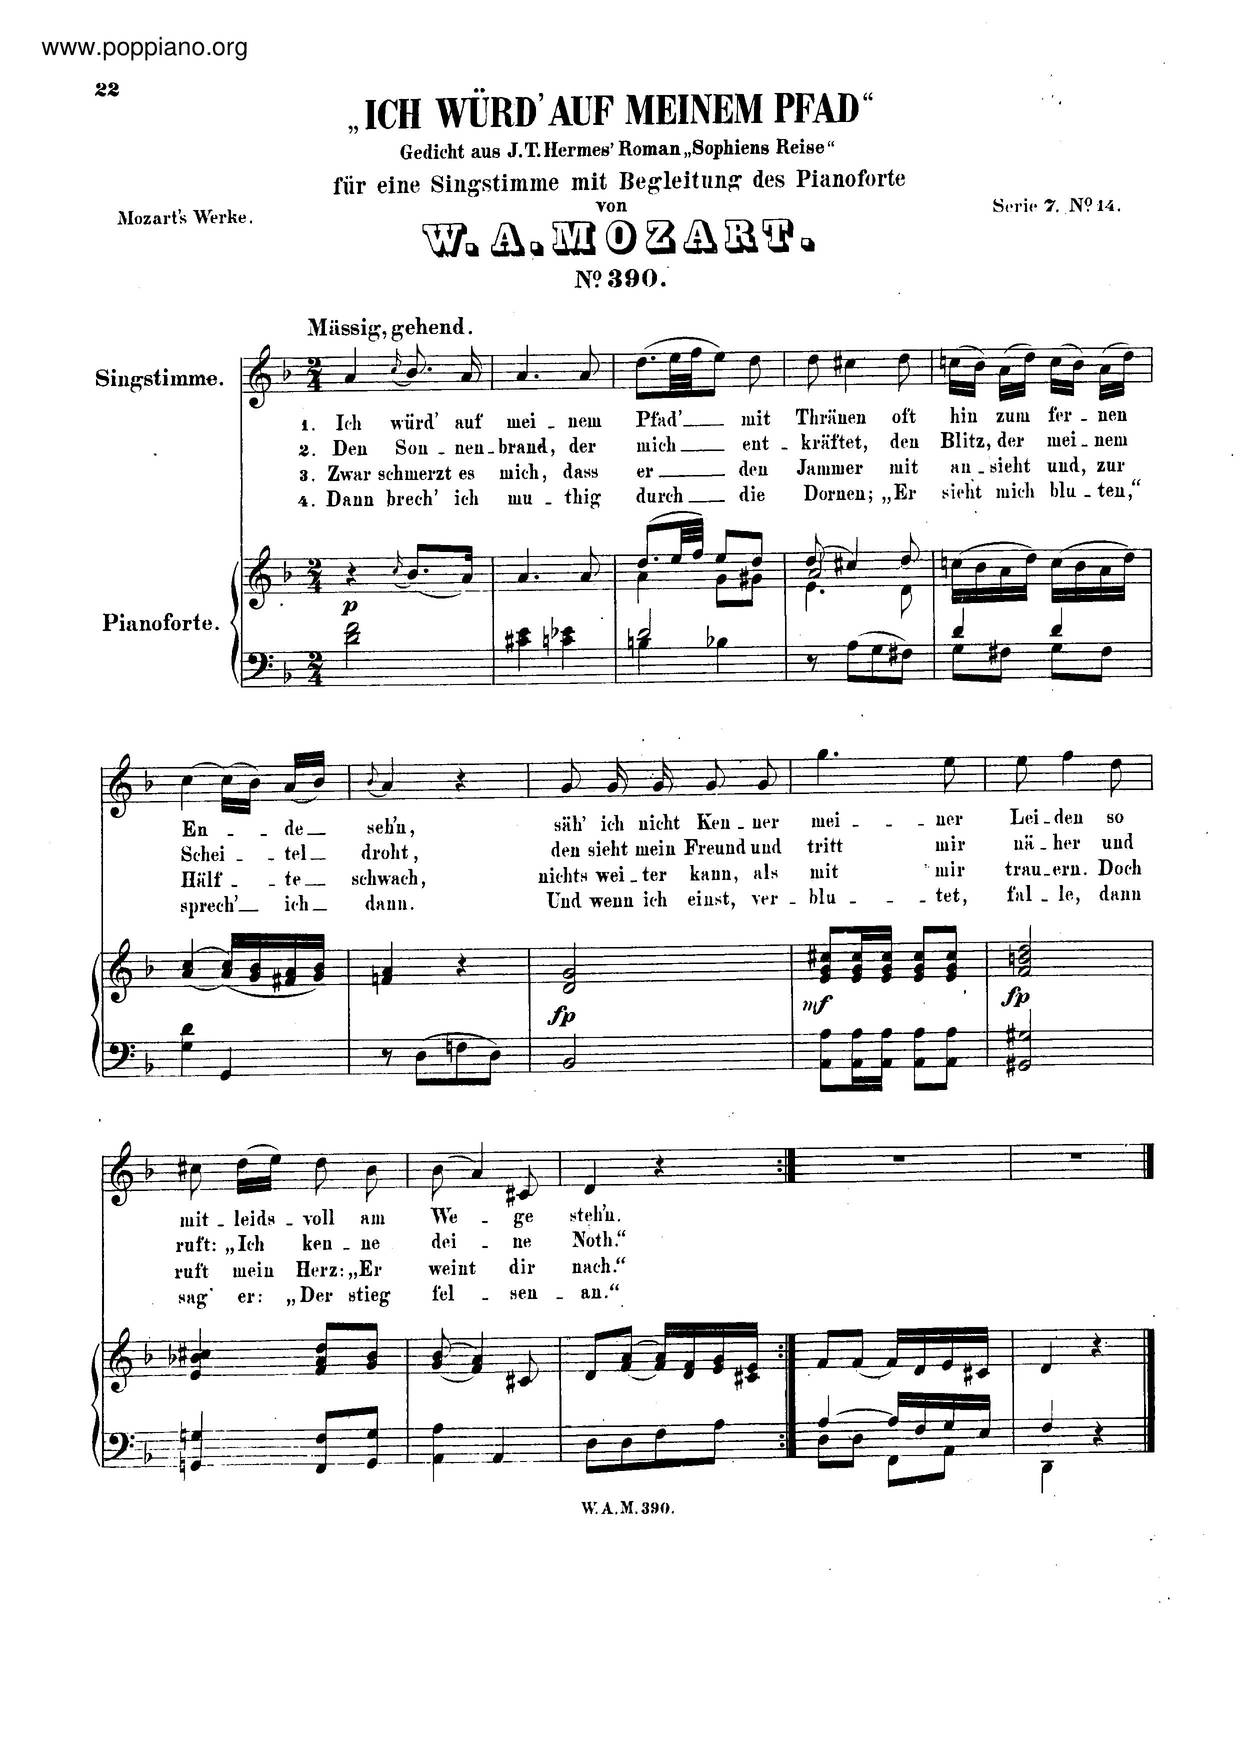 An Die Hoffnung, K. 390/340Cピアノ譜